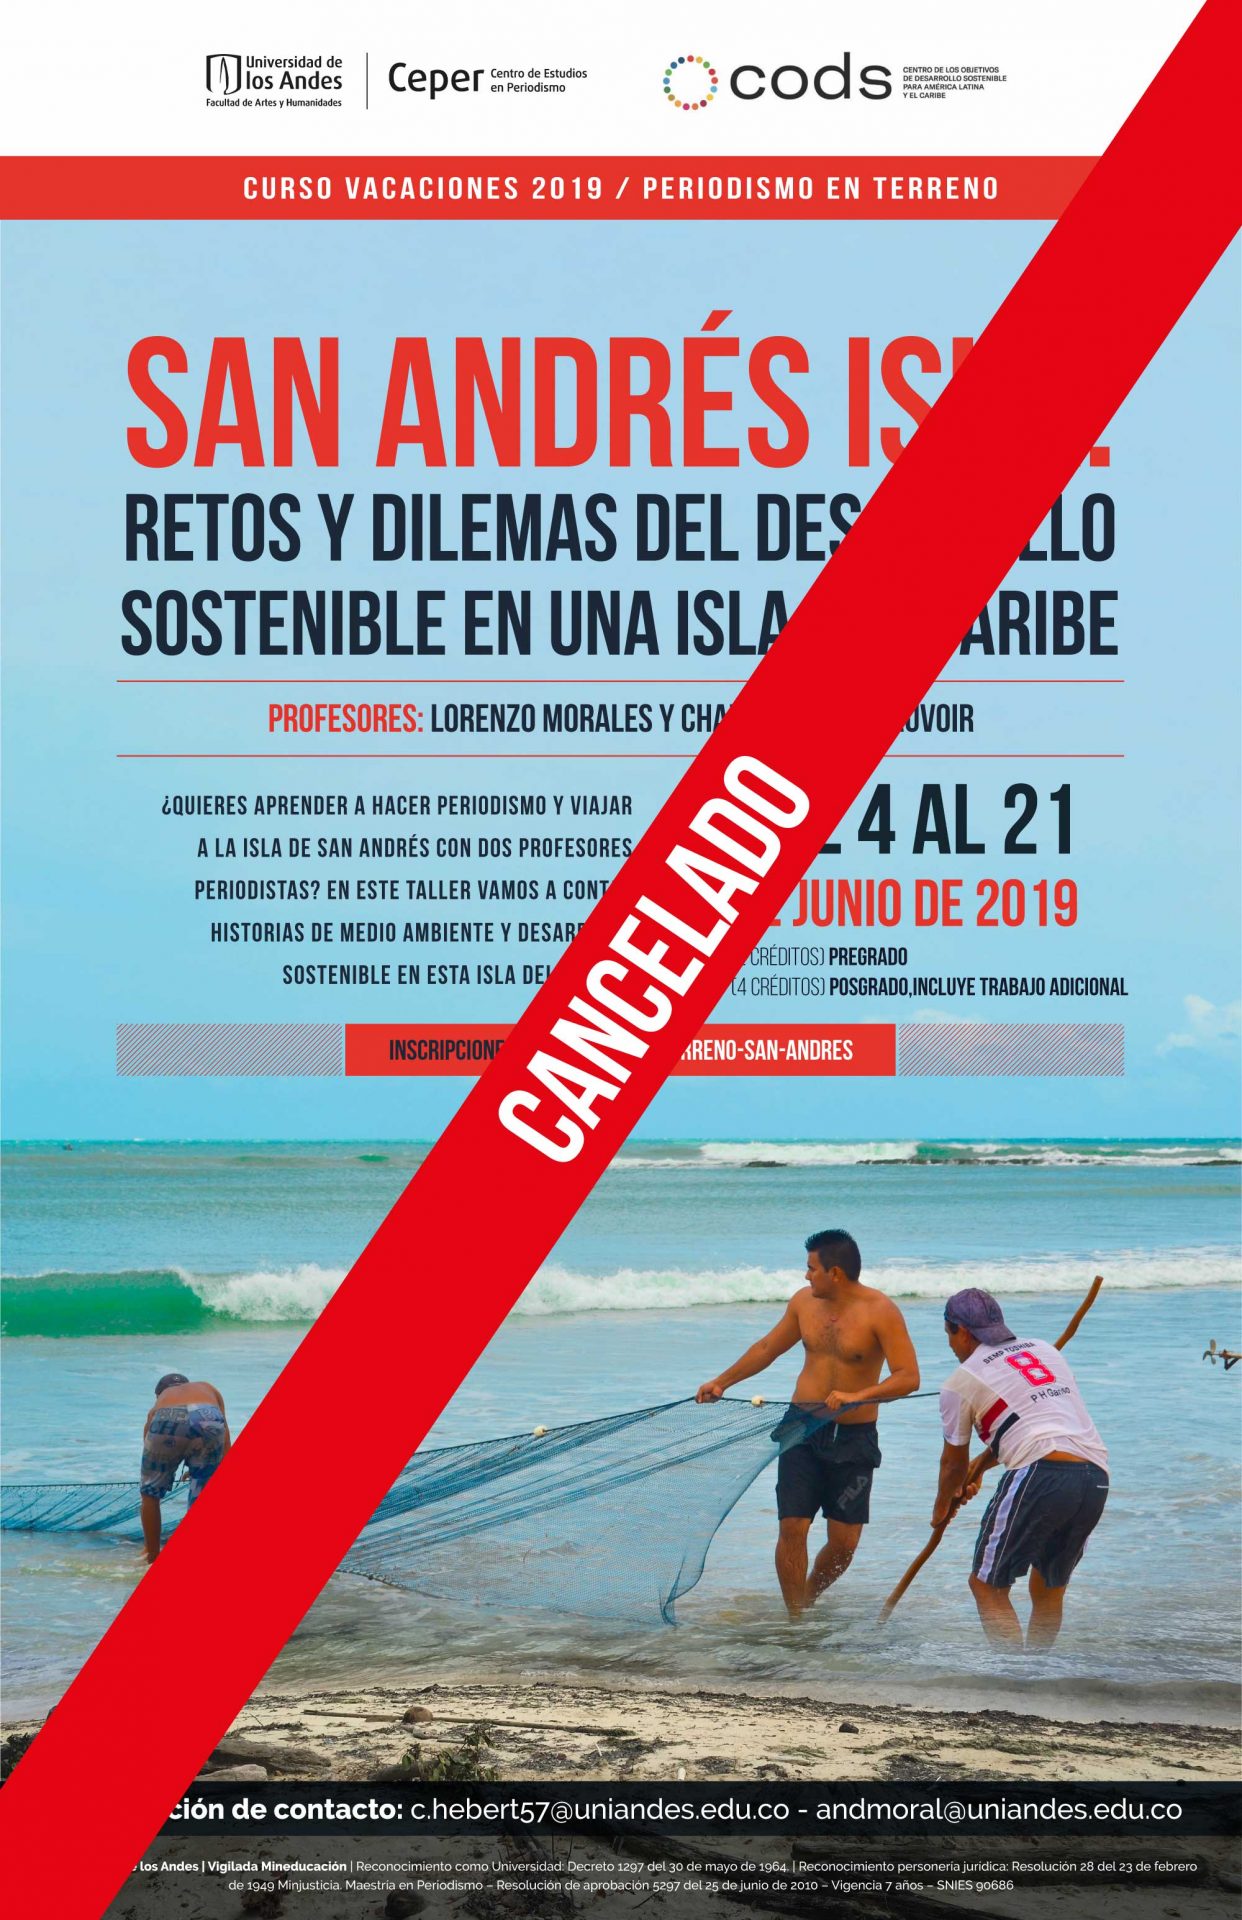 Retos y dilemas del desarrollo sostenible en una isla del caribe, del 4 al 21 de junio de 2019.